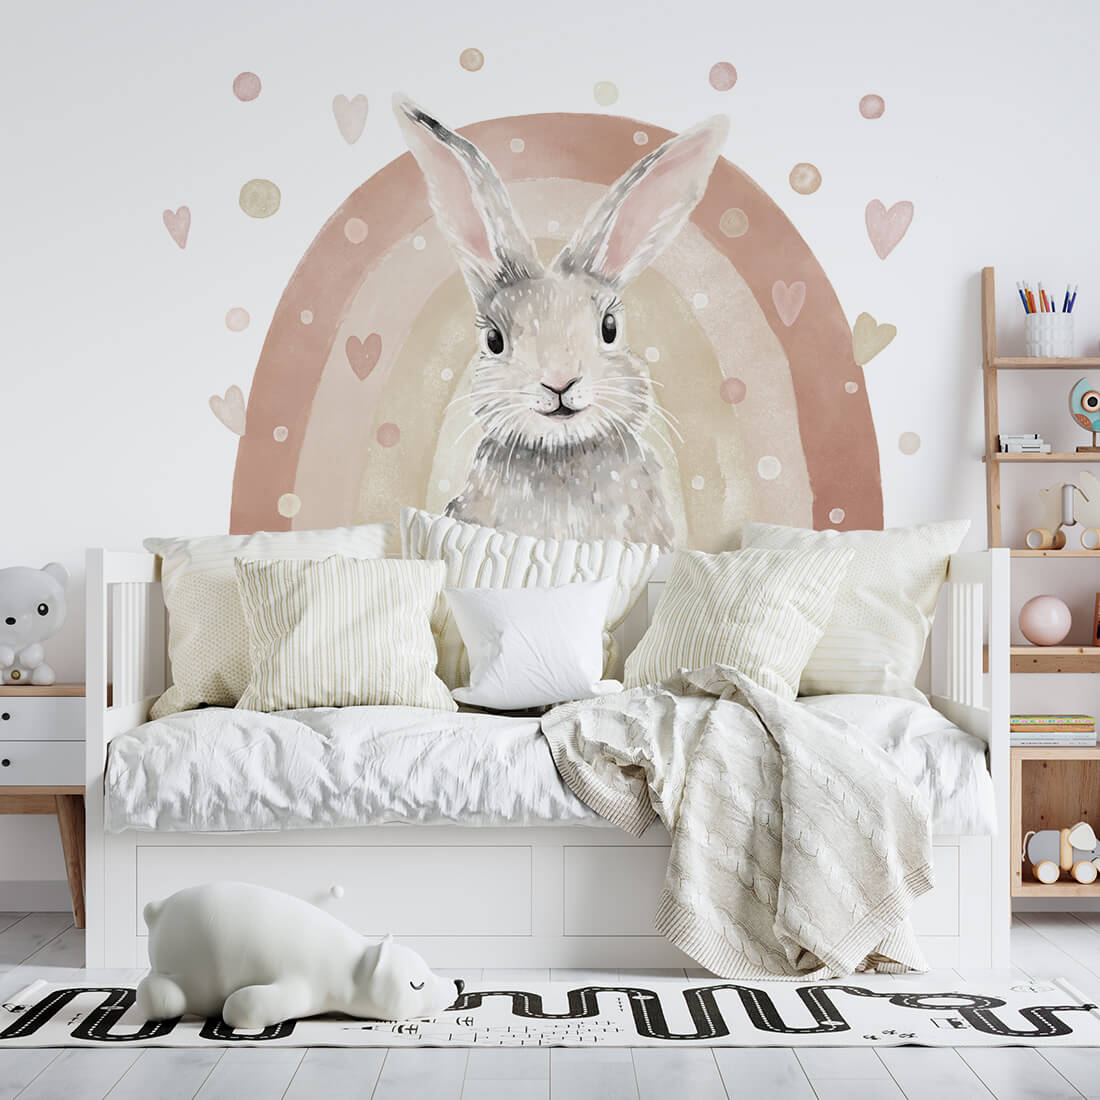 Wall Sticker - Rabbit